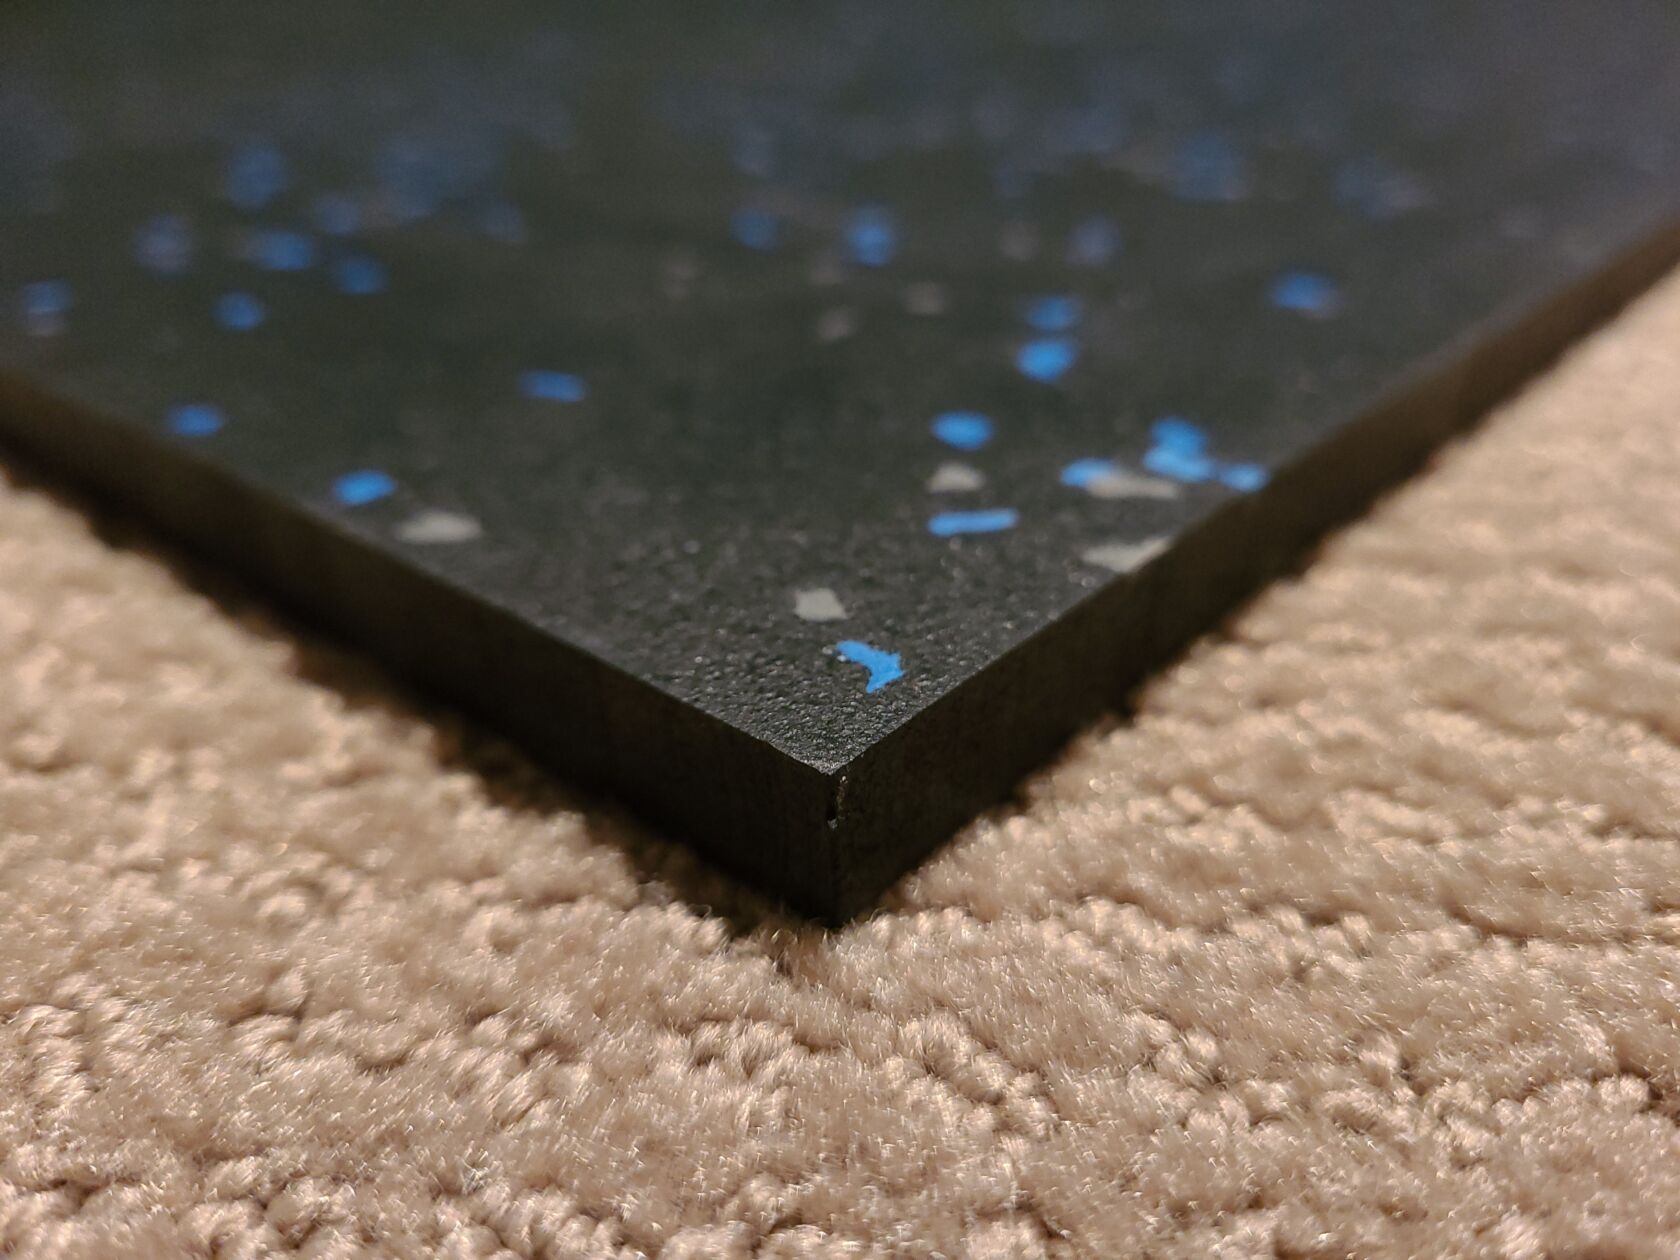 Rubber flooring on carpet